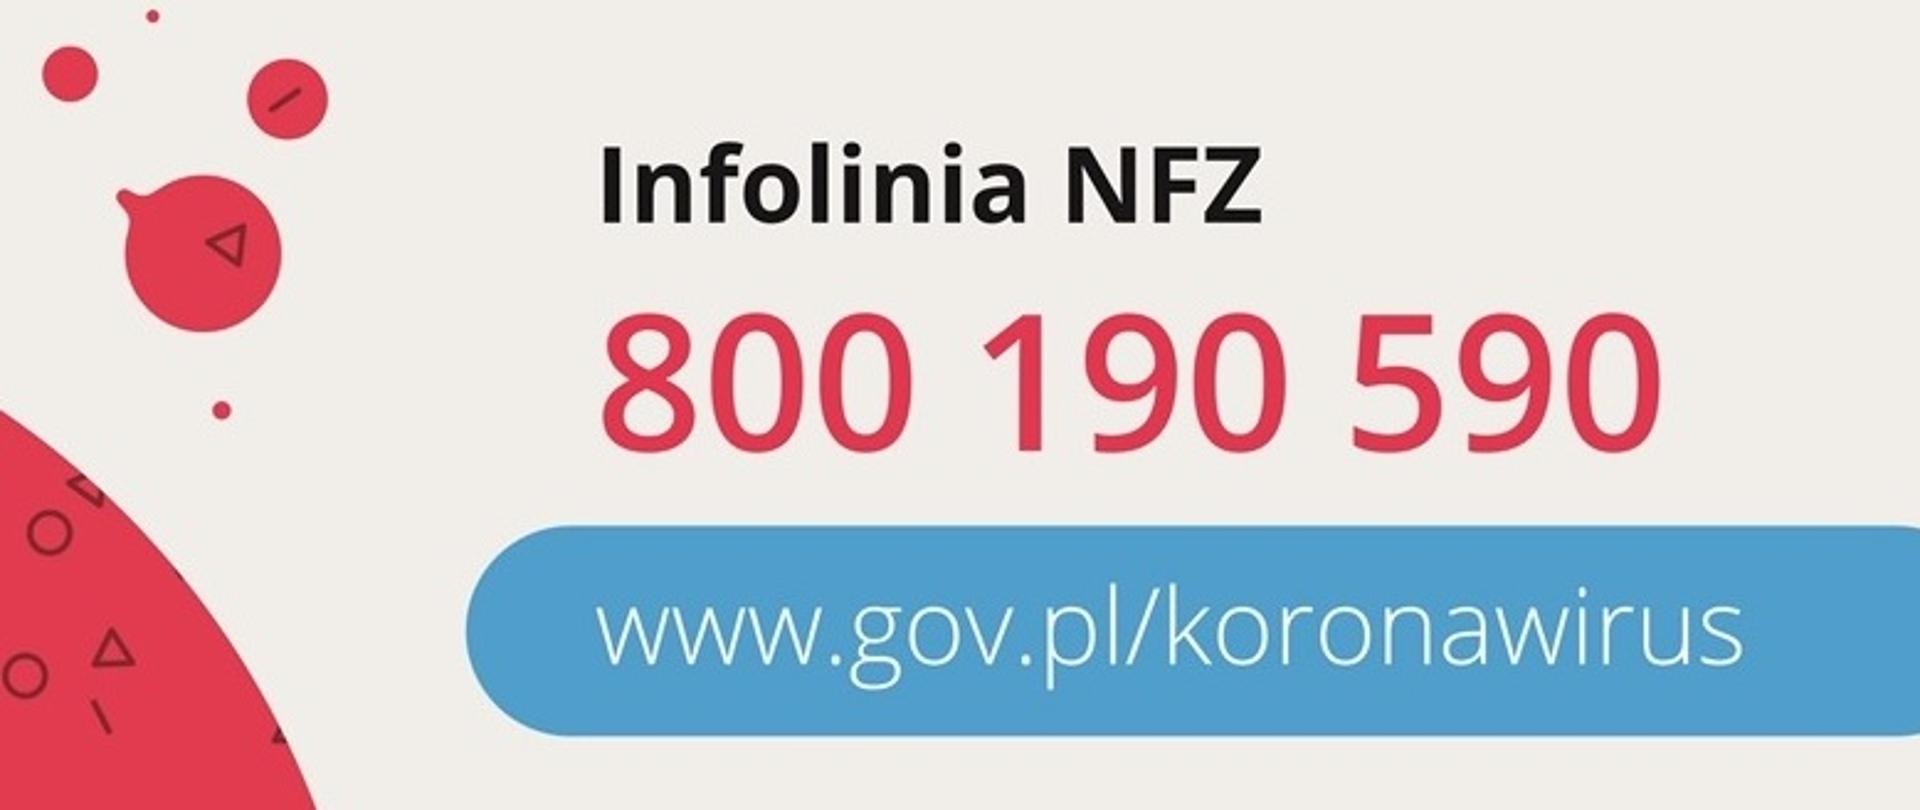 Obrazek przedstawiający numer infolinii NFZ 800 190 590 i adres strony internetowej www.gov.pl/koronawirus